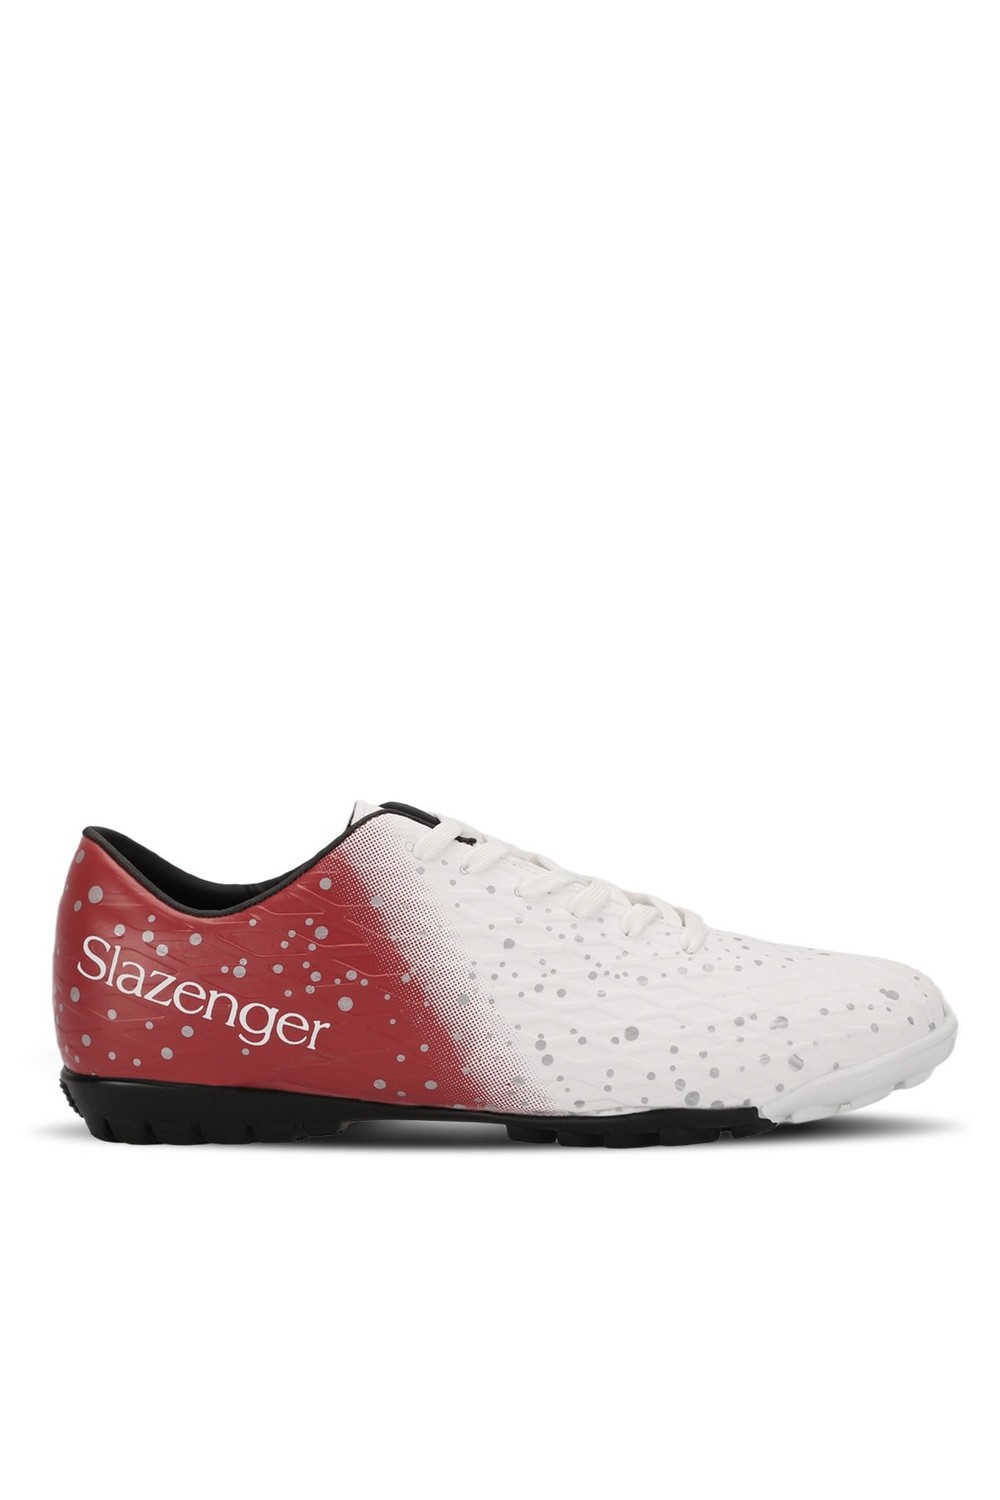 Slazenger Football Men's Astroturf Shoes White / Red